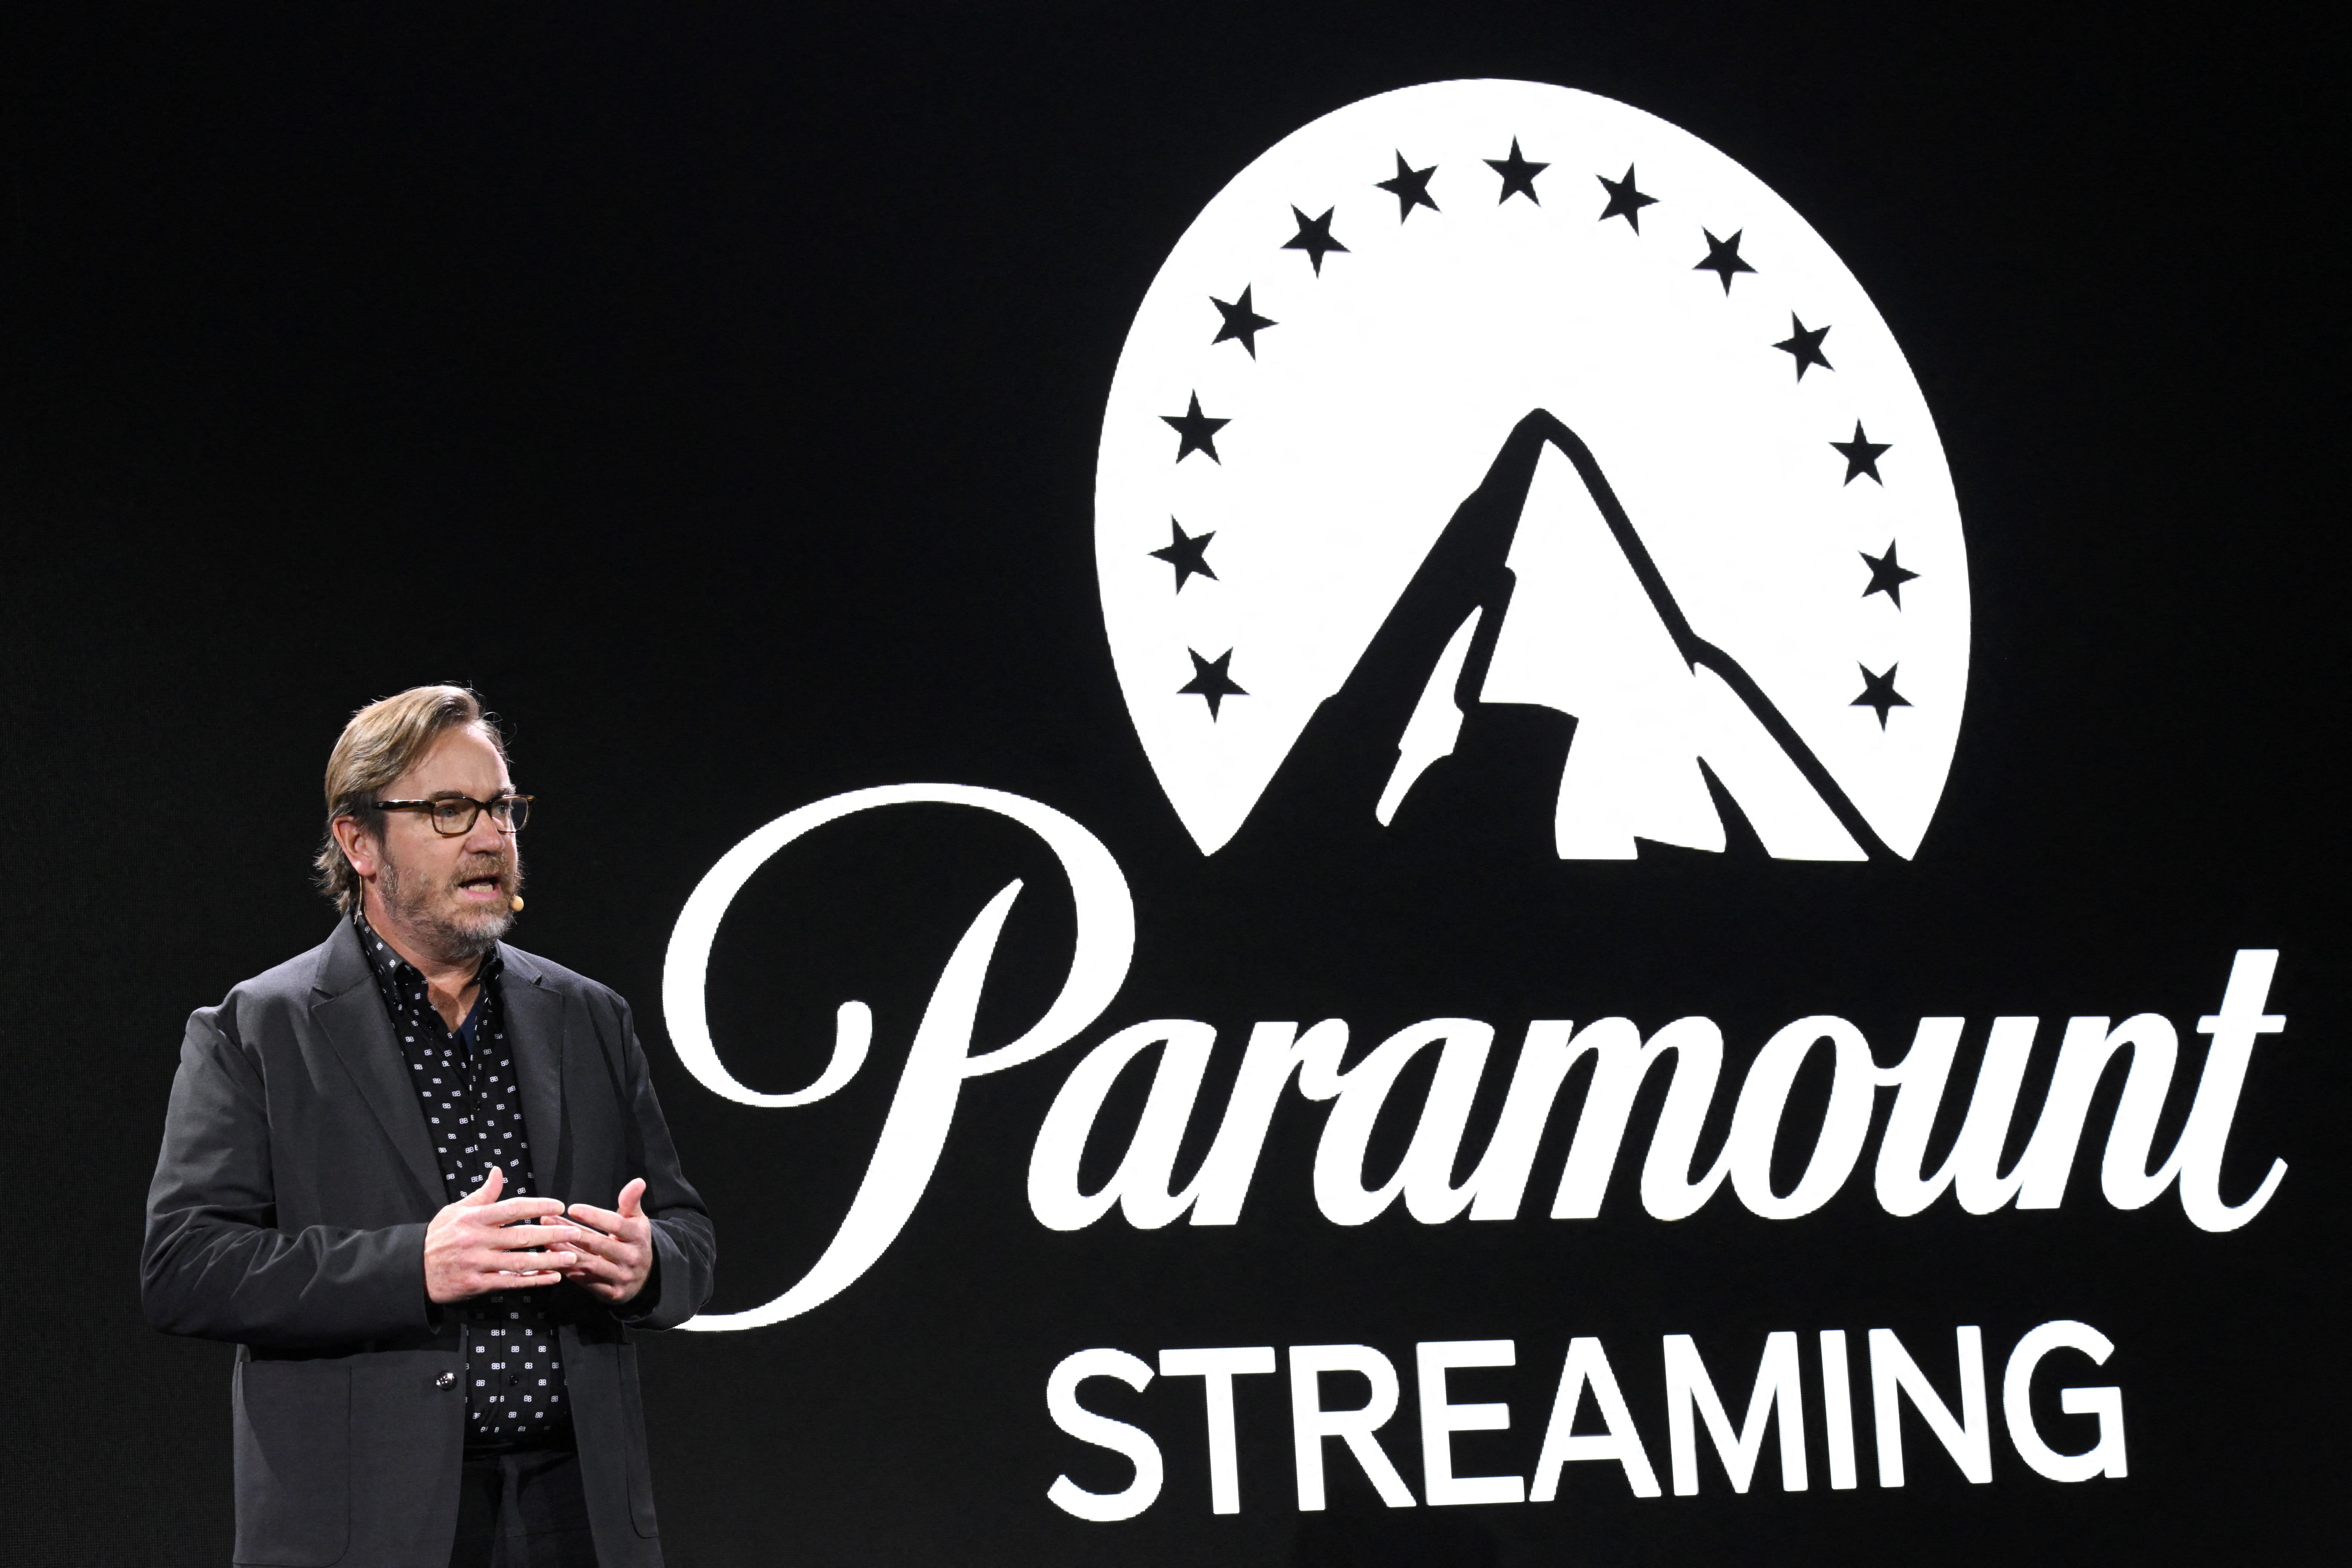 Usługa przesyłania strumieniowego Paramount połączy się z Showtime 27 czerwca